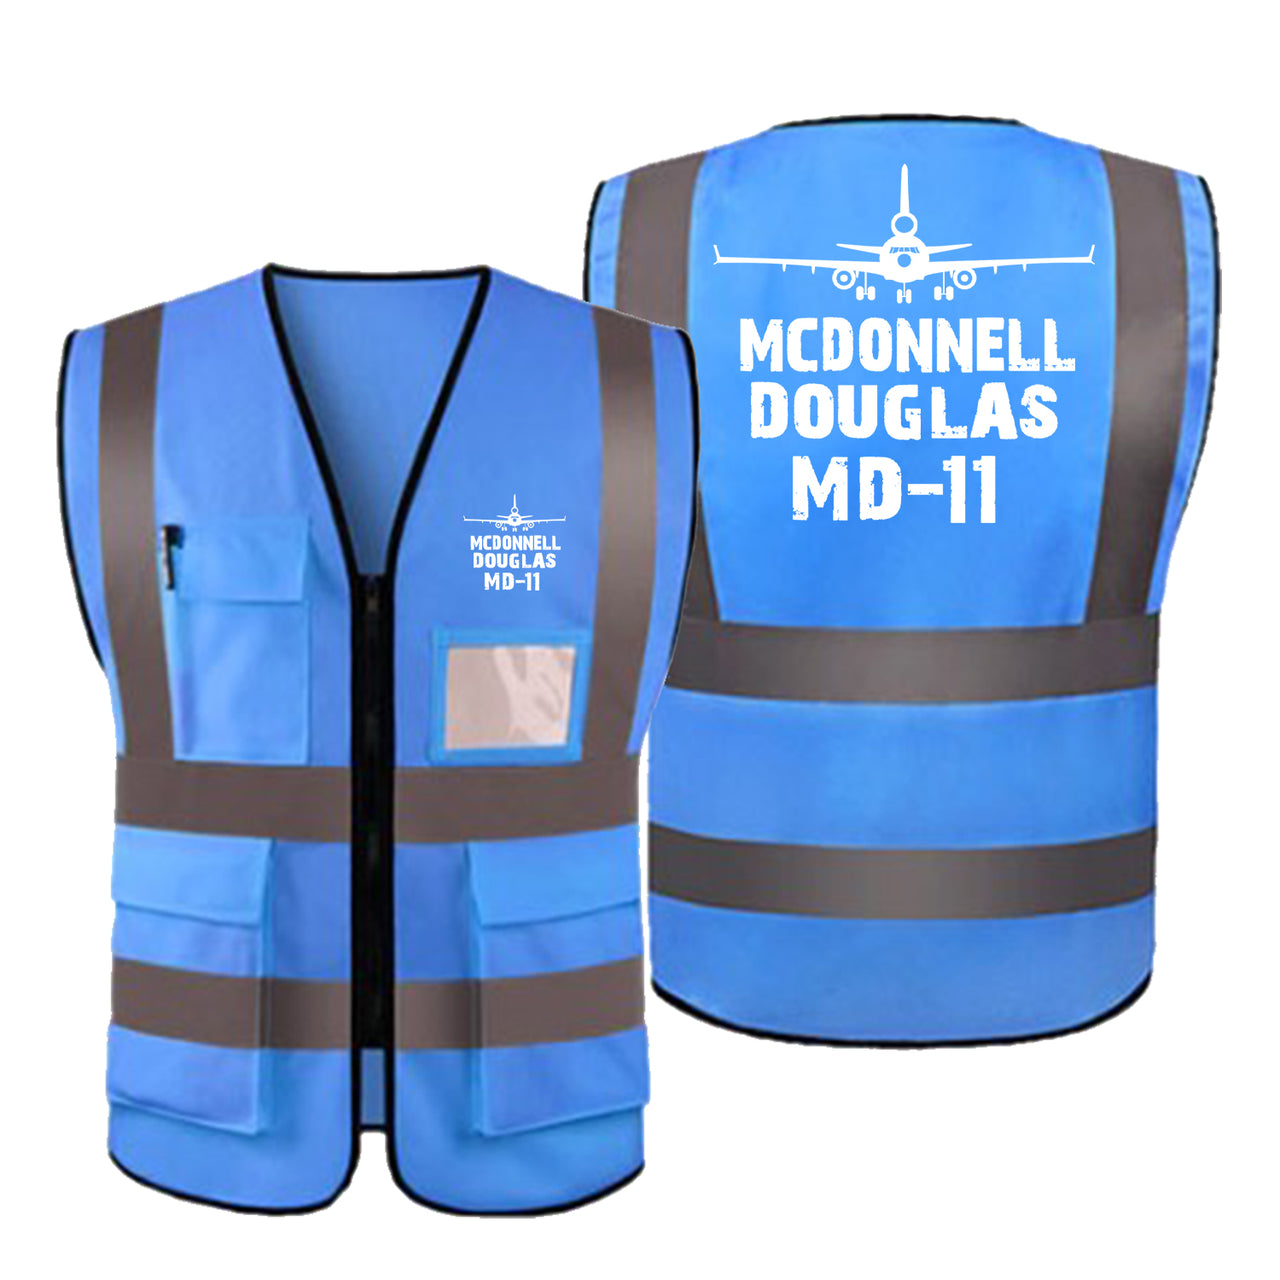 McDonnell Douglas MD-11 & Plane Designed Reflective Vests